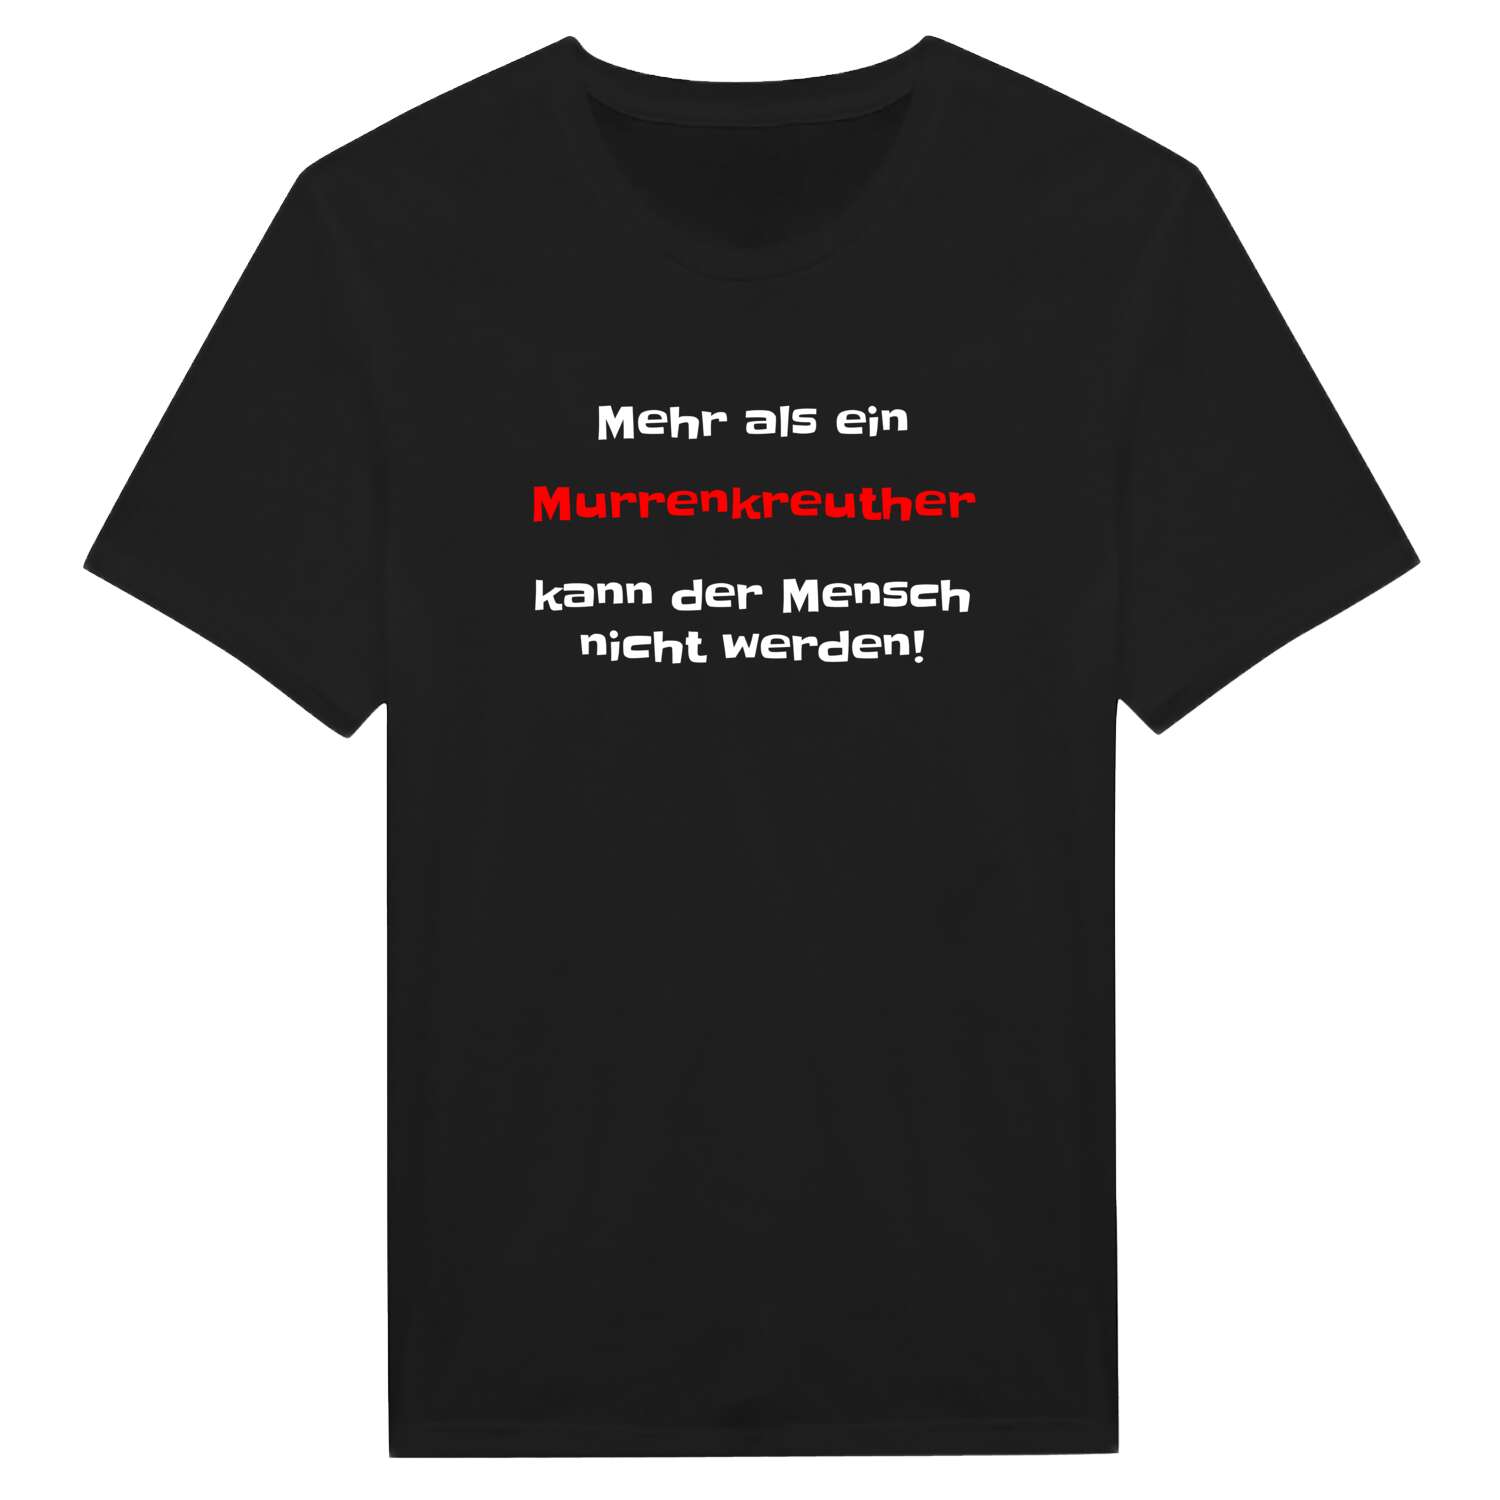 Murrenkreuth T-Shirt »Mehr als ein«